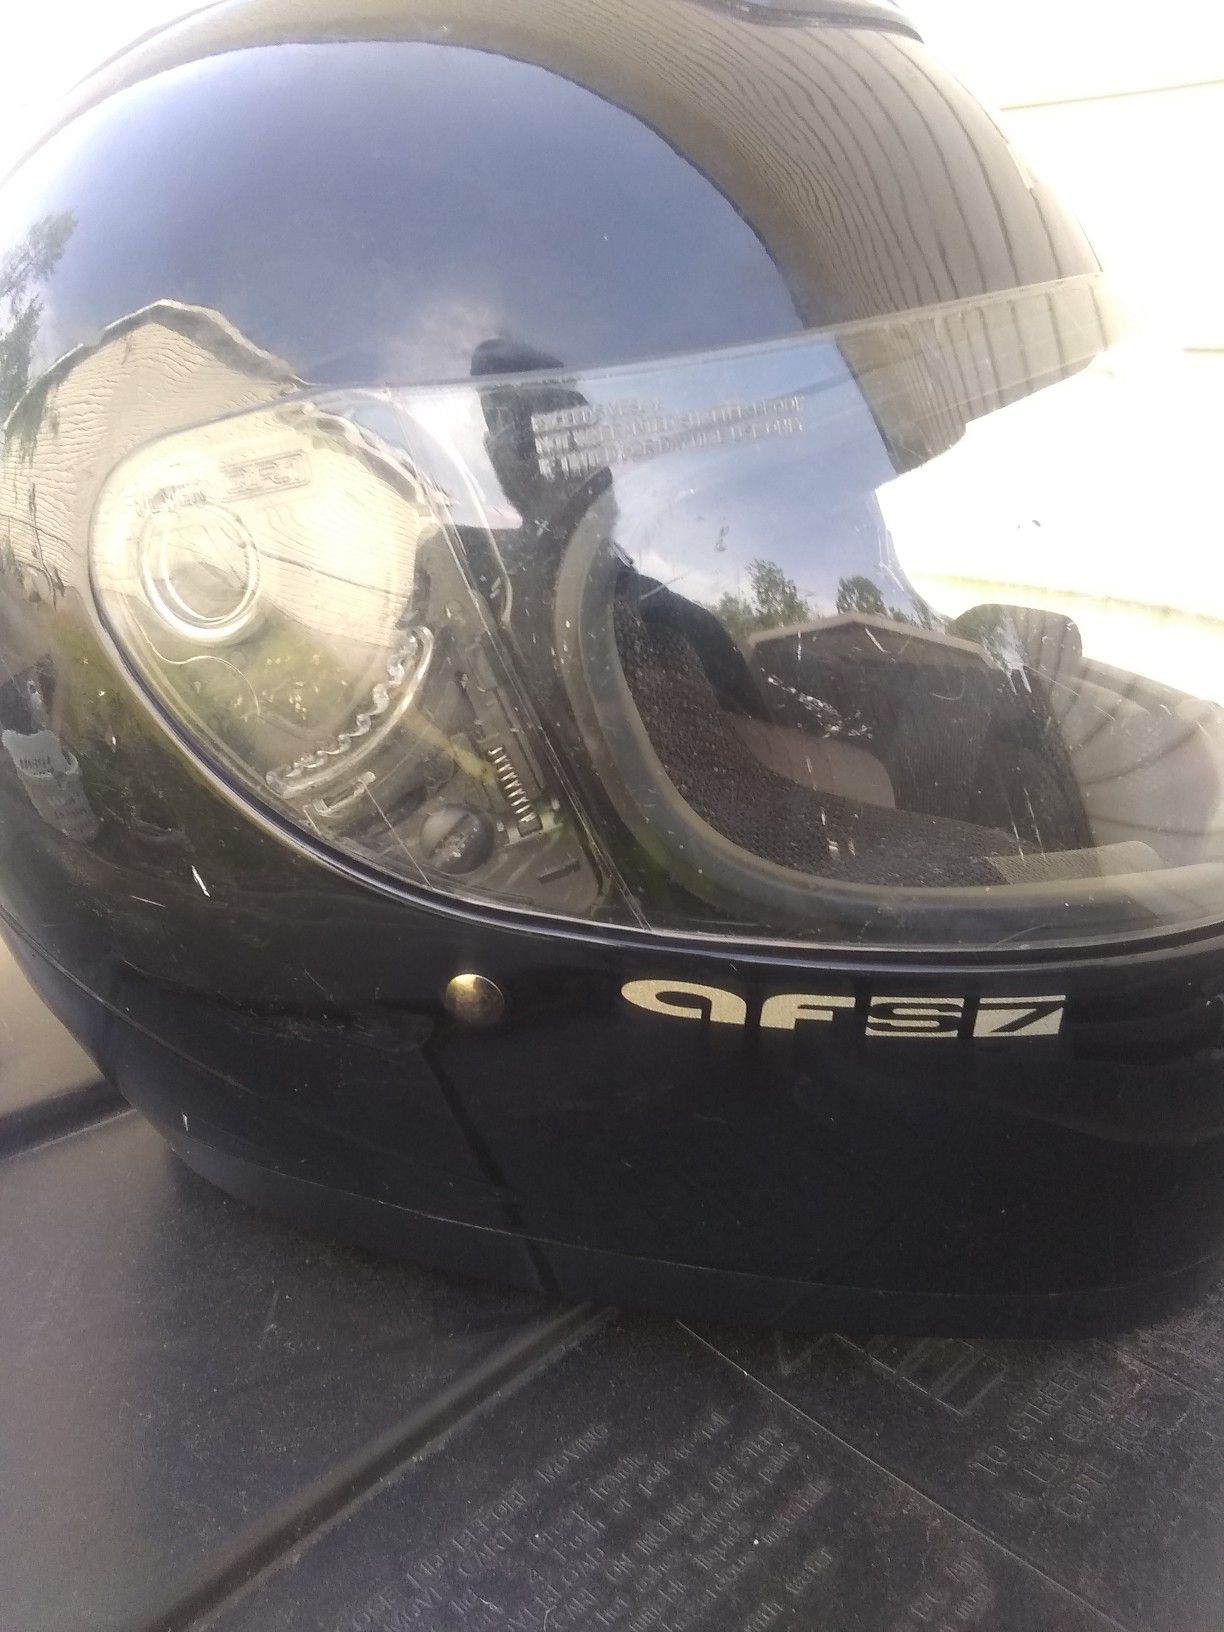 Fuller motorcycle helmet